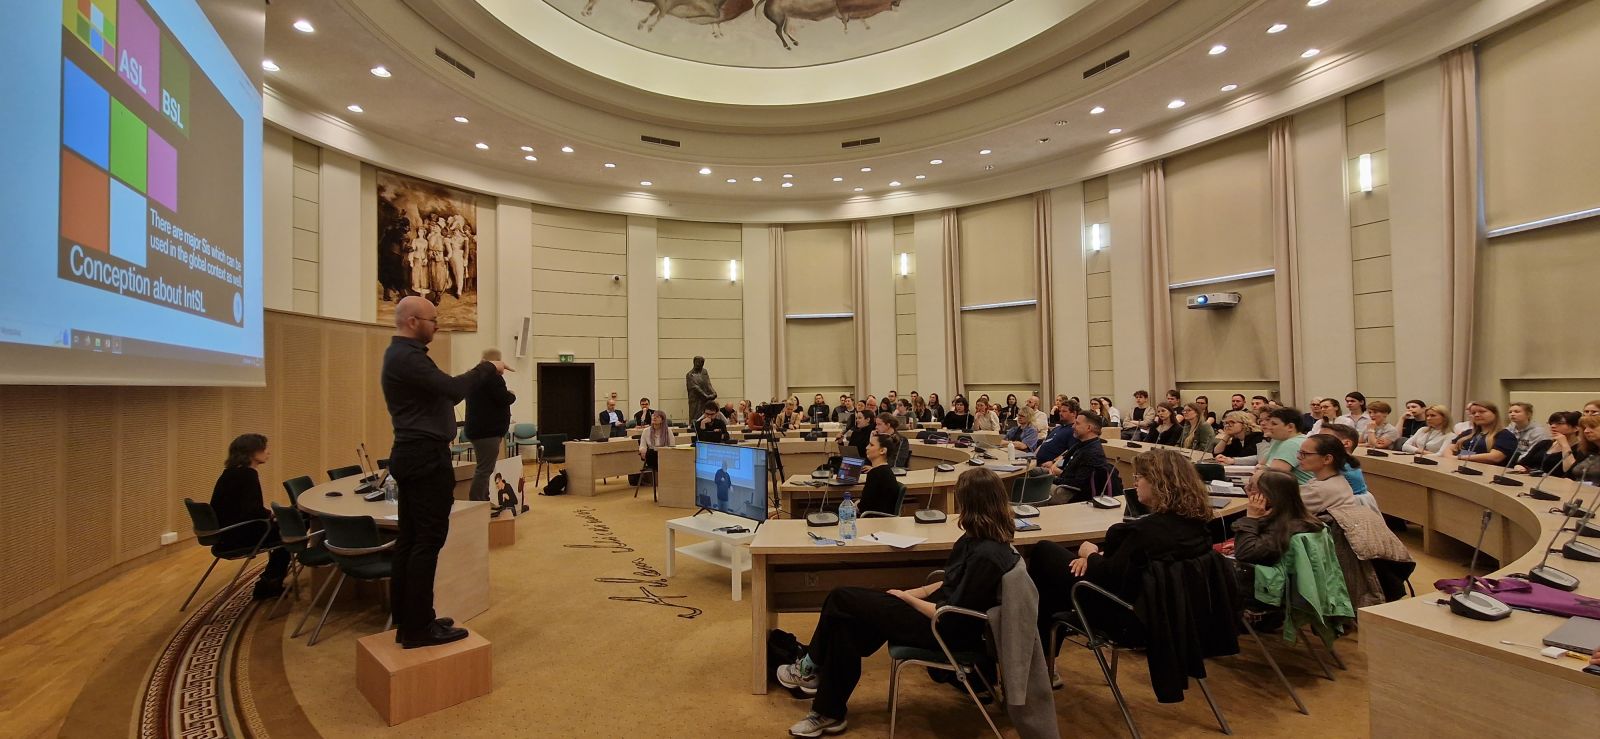 W Salonie Mickiewicza zgromadzeni są uczestnicy konferencji o języku migowym, przy stole prezydialnym na podwyższeniach stoją tłumacze na polski i uniwersalny język migowy.